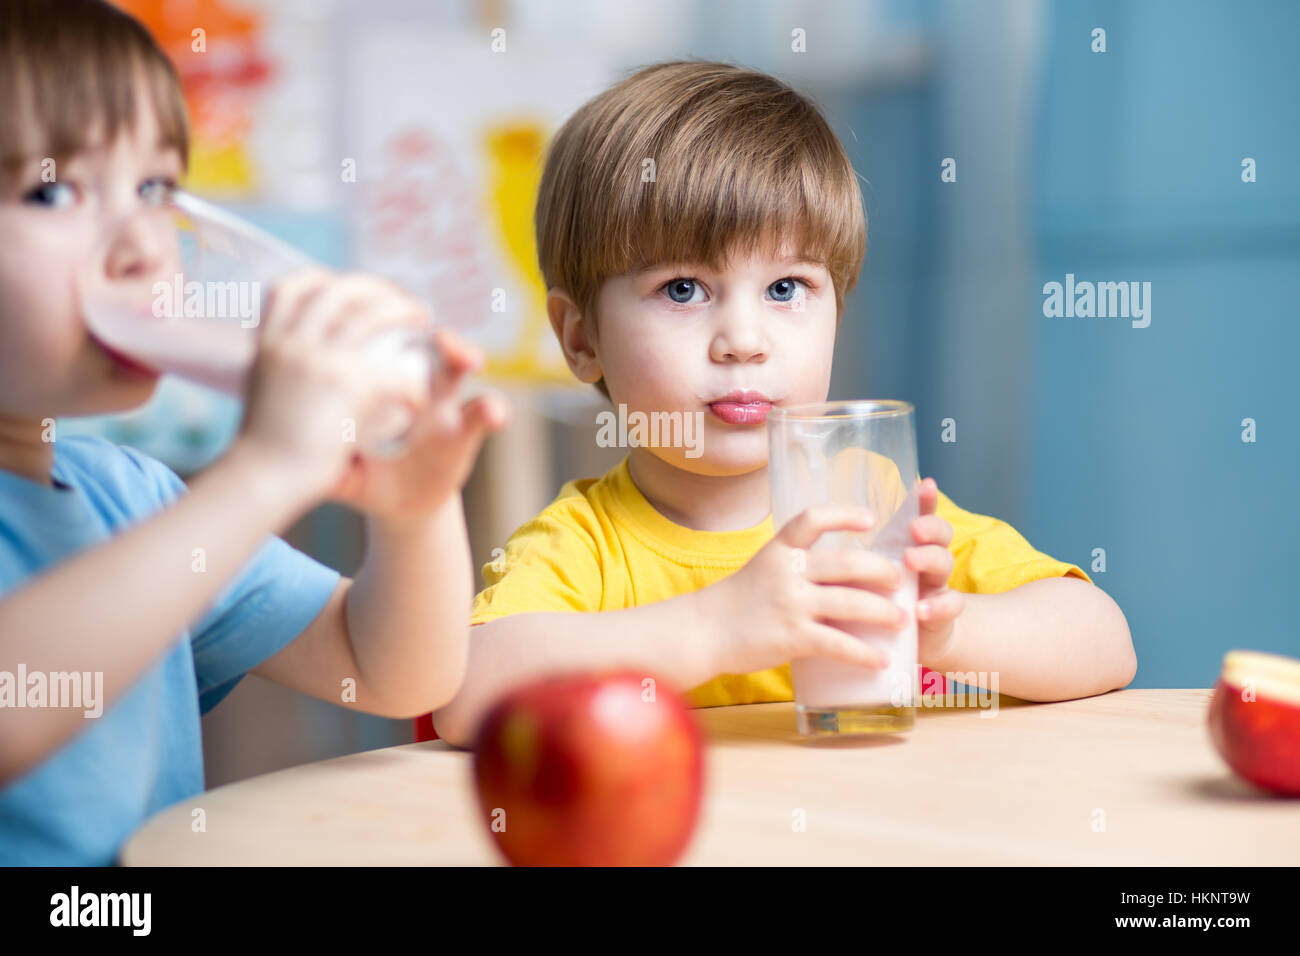 Kids boys drinking milk in nursery Stock Photo